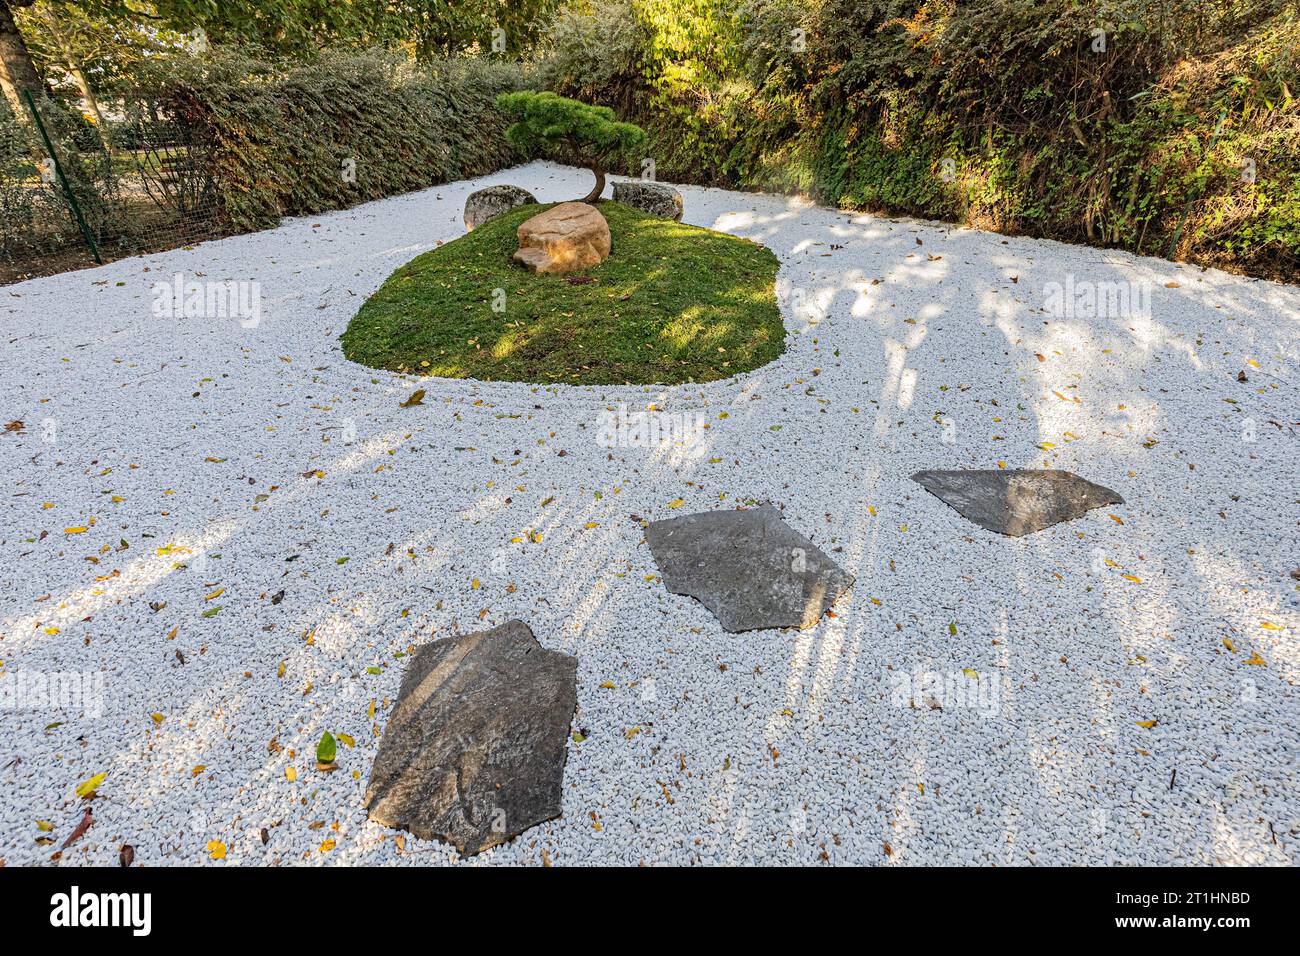 Jardin zen sec nouvellement créé dans le jardin japonais de Dijon. Jardin zen sec nouveau créé au jardin japonais de Dijon. Banque D'Images